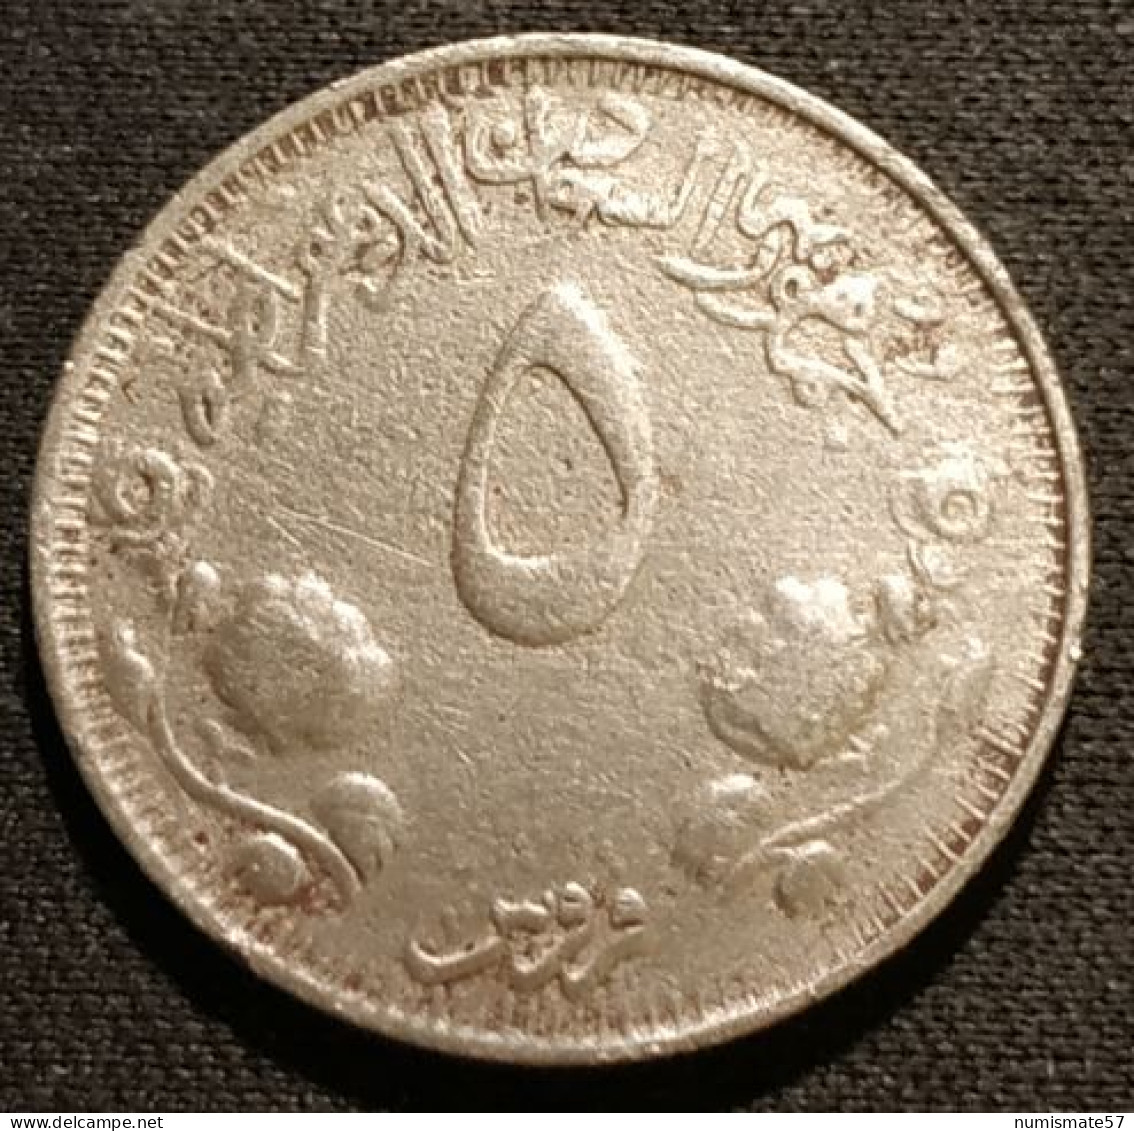 RARE - SOUDAN - SUDAN - 5 GHIRSH 1976 ( 1396 ) - KM 66 - ( 20ème Anniversaire De L'Indépendance ) - Sudan